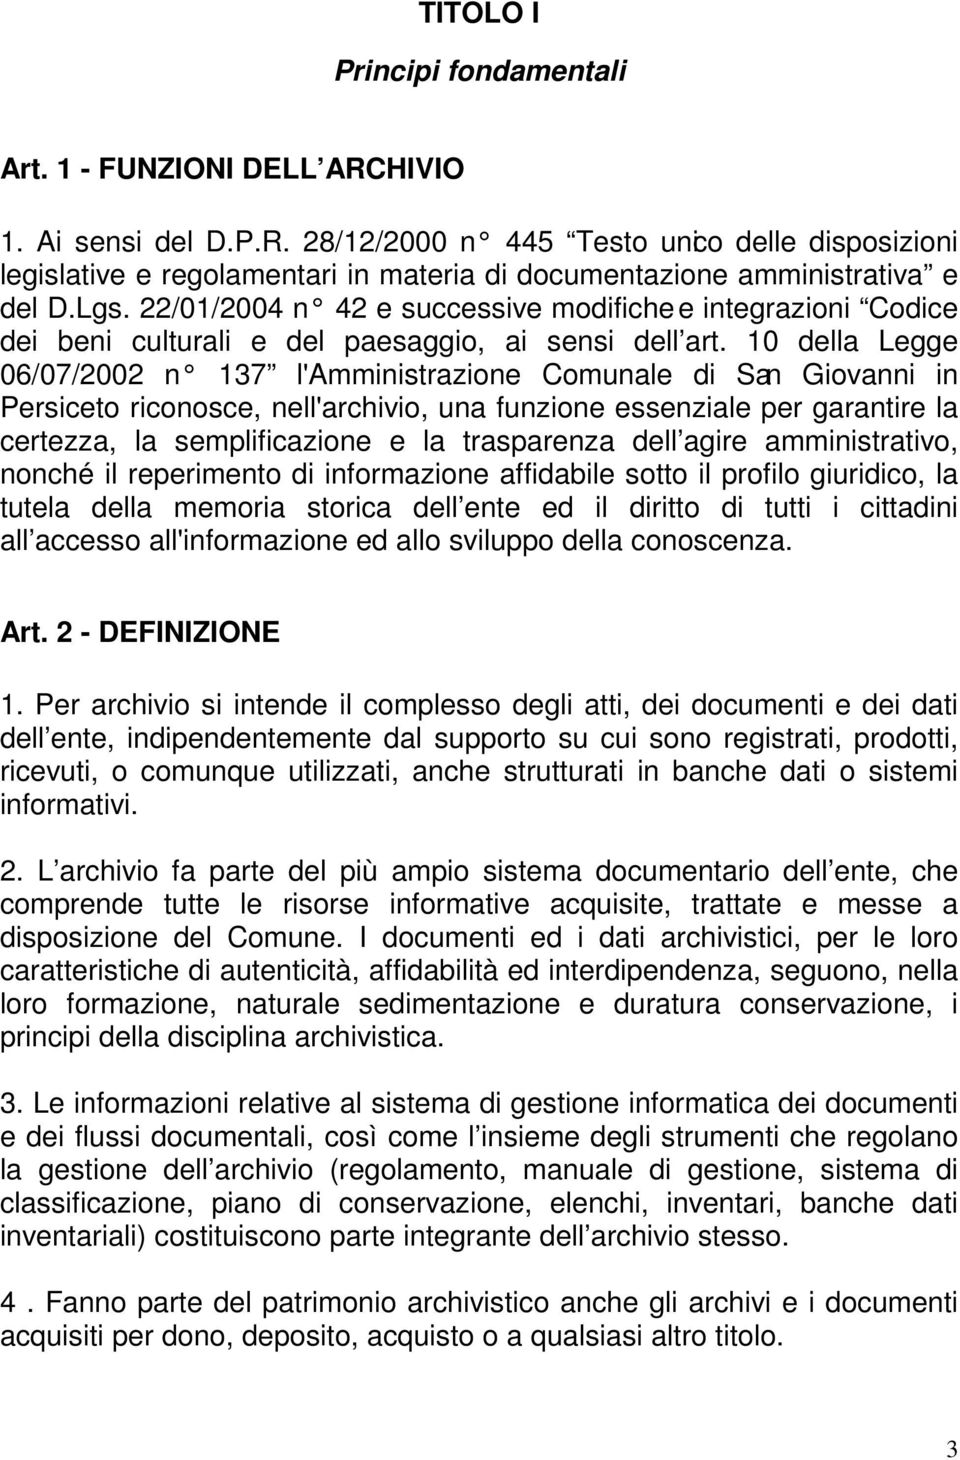 10 della Legge 06/07/2002 n 137 l'amministrazione Comunale di San Giovanni in Persiceto riconosce, nell'archivio, una funzione essenziale per garantire la certezza, la semplificazione e la